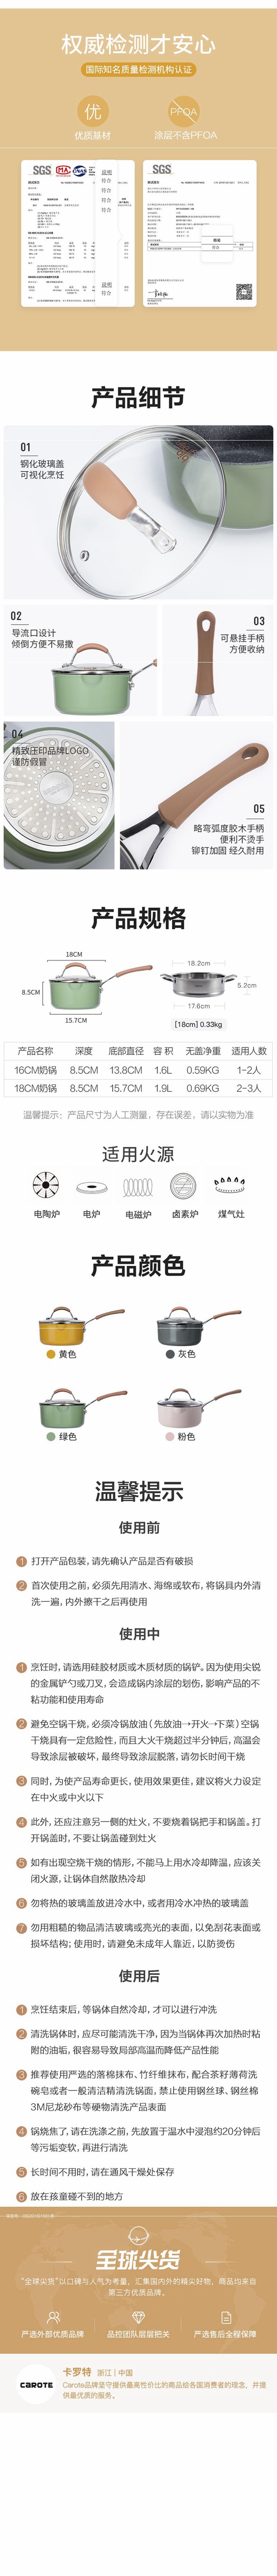 网易严选多色可选多功能锅 一锅多用轻松烹饪 奶锅 (灰色)16cm